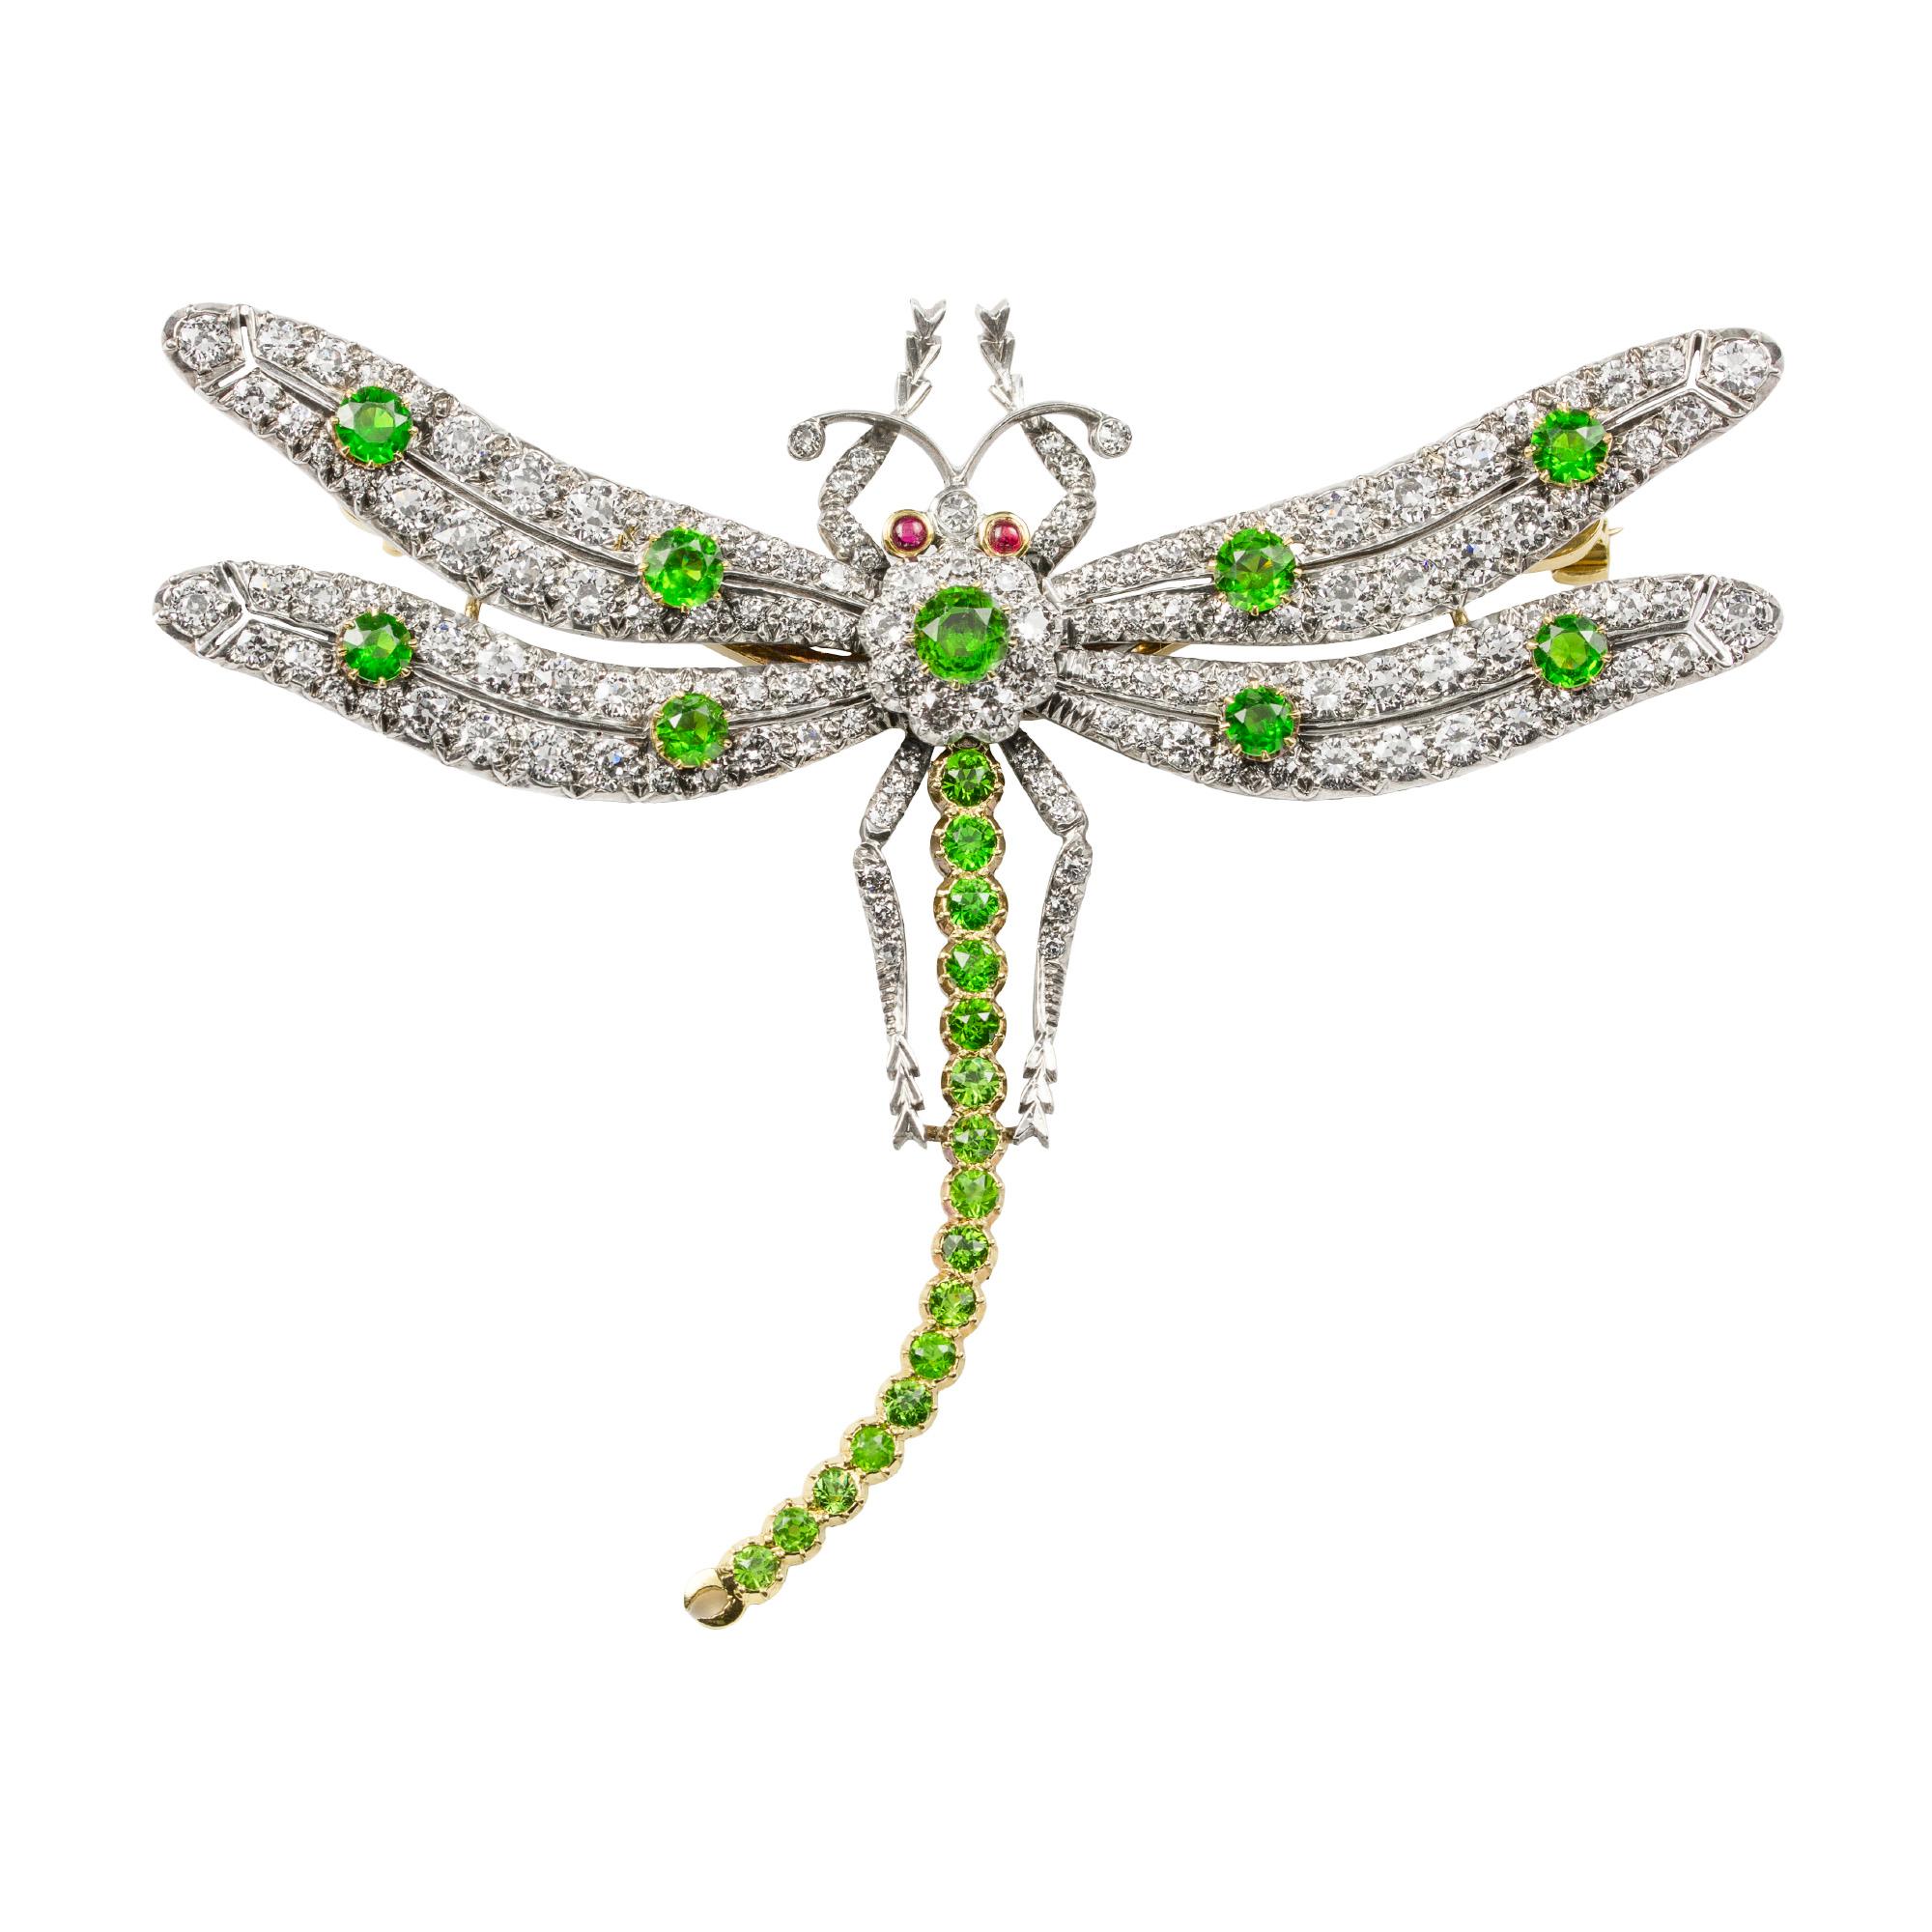 Brosche mit Demantoid-Granaten und Diamanten von Bentley & Skinner in Form einer Libelle, deren Flügel und Körper mit Diamanten im alten Brillantschliff mit einem Gesamtgewicht von 6,91 Karat und runden facettierten Demantoid-Granaten mit einem